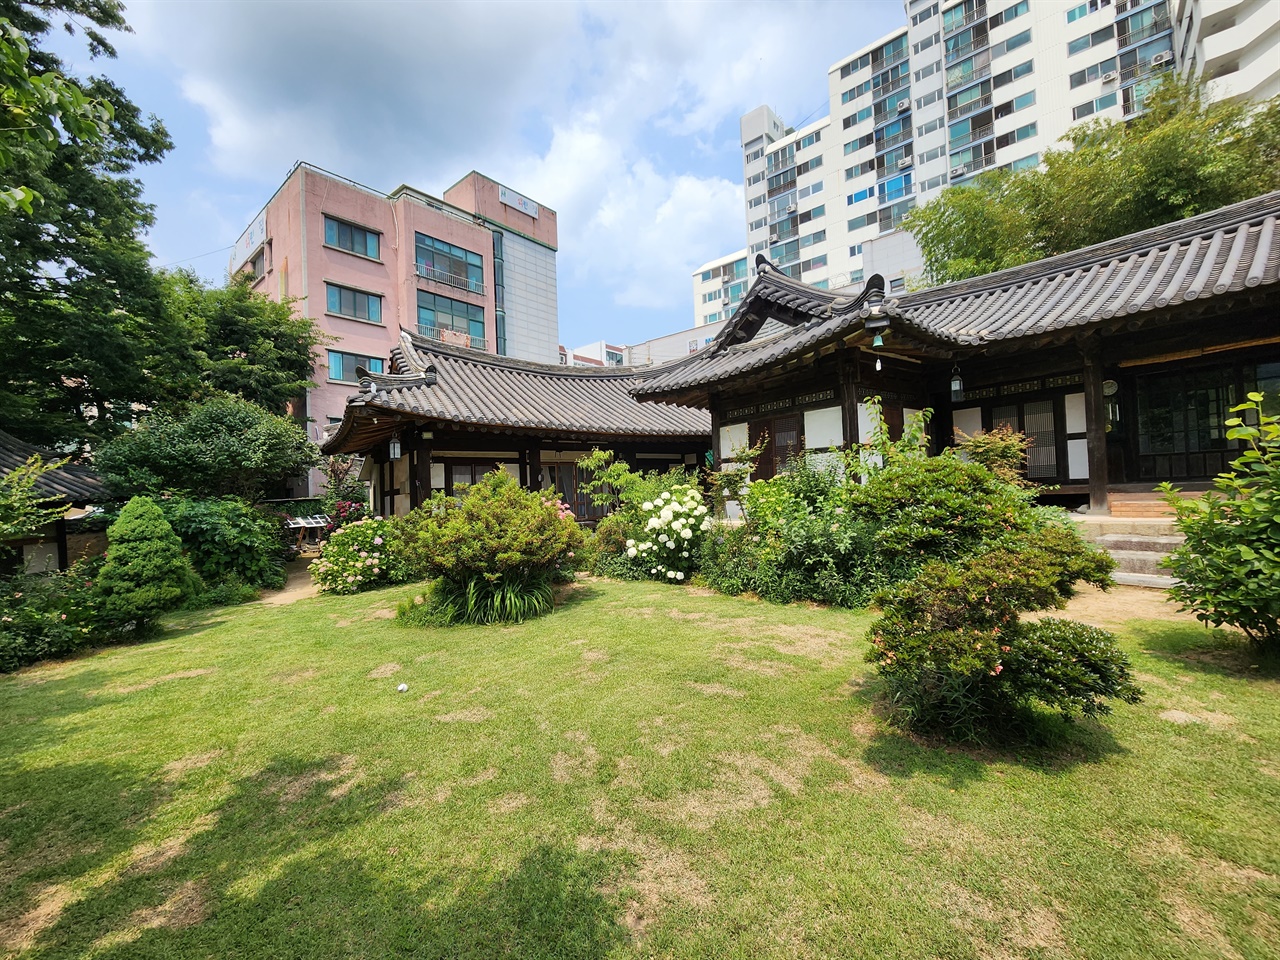 김종영 생가를 둘러싸고 있는 아파트와 높은 건물들